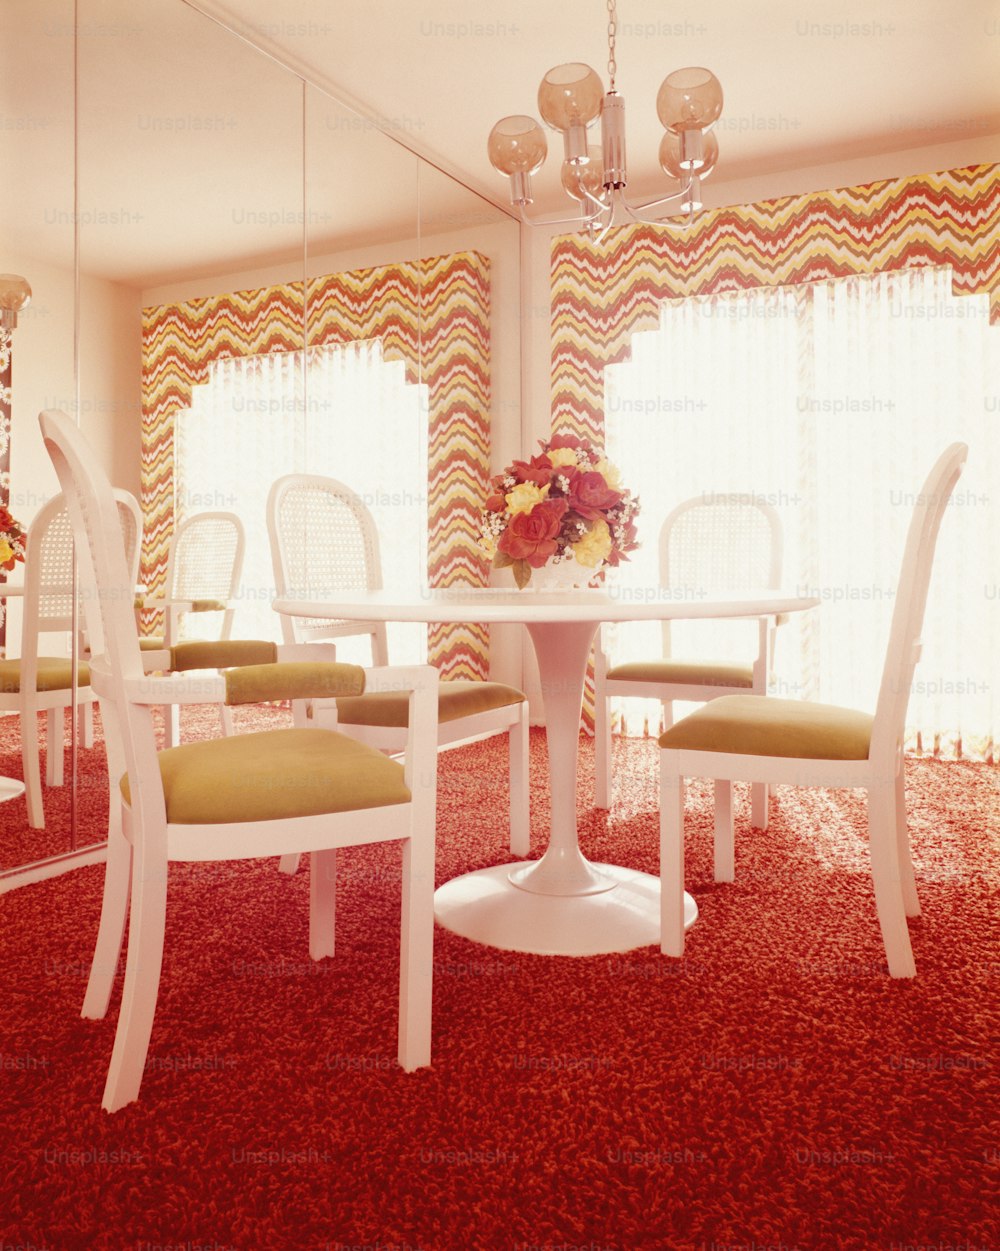 ESTADOS UNIDOS - CIRCA 1970s: Interior del comedor, con mesa blanca y cuatro sillas de pedestal de plástico moldeado.